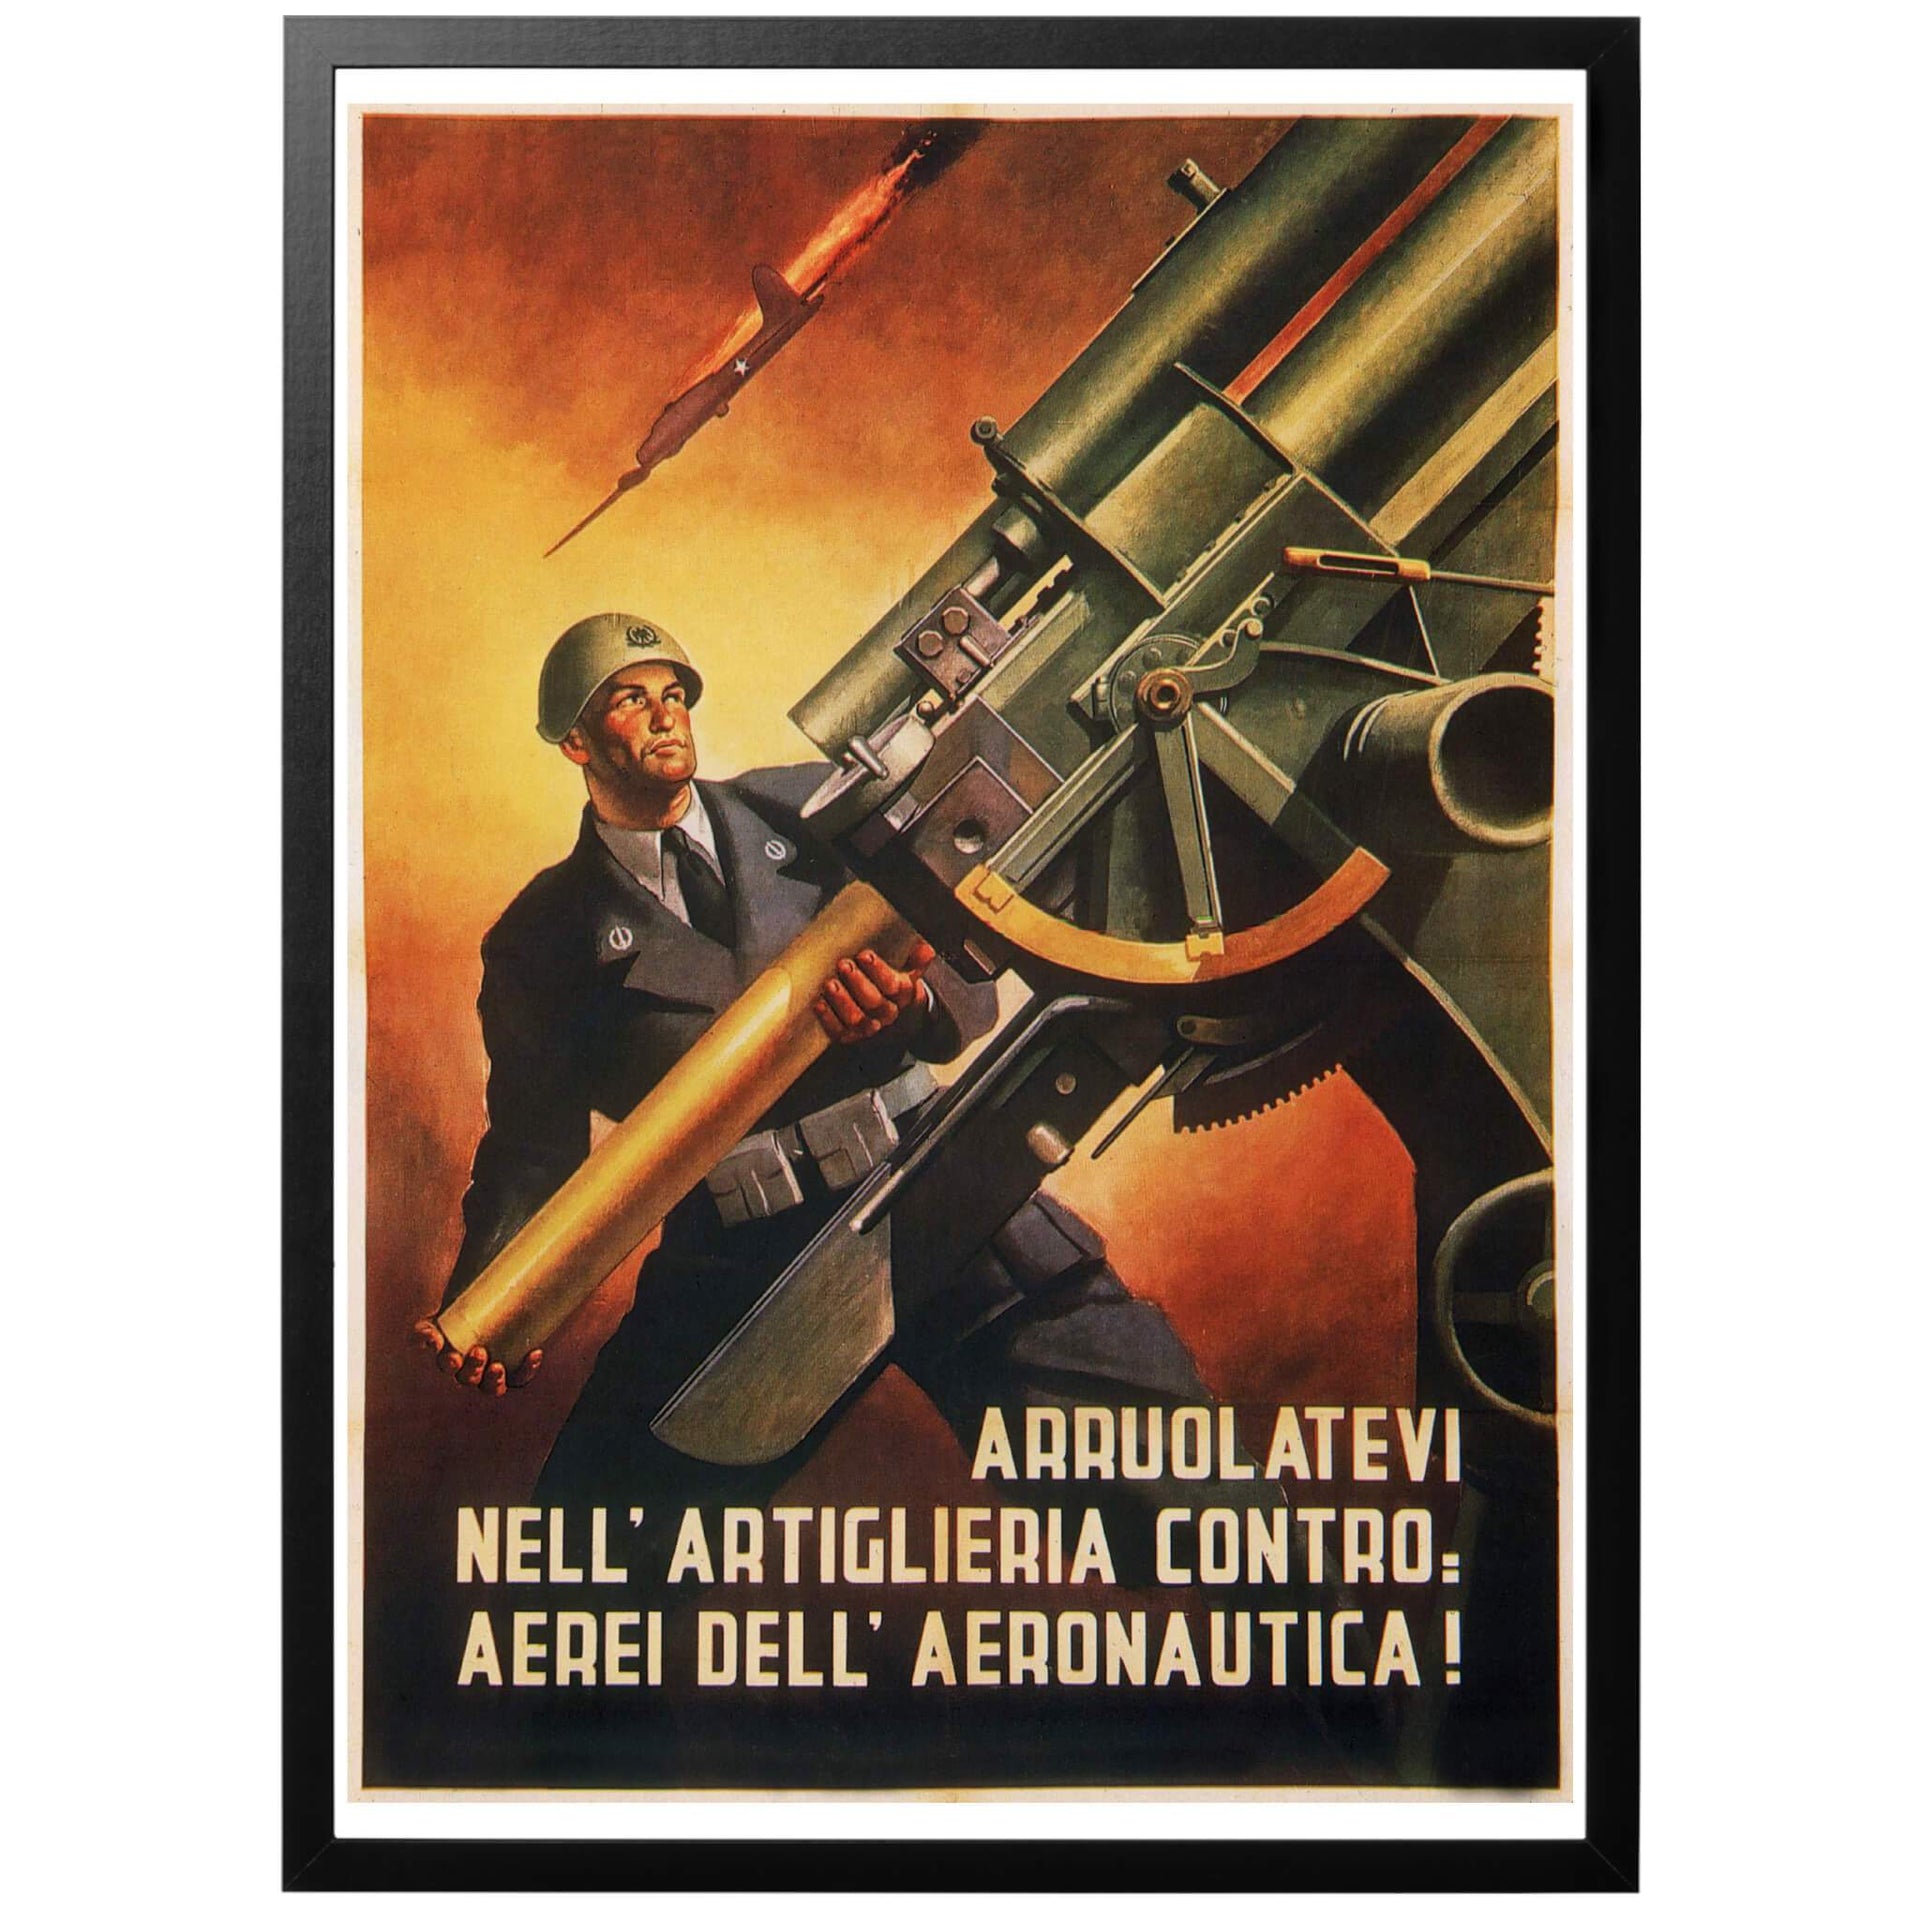 Arruolatevi Nell' artiglieria Contro: Aerei dell' aeronatica Sv - "Gå med i luftvärnet" Italiensk WWII affisch från 1944 och den s.k Saló-republiken. Digitalt restaurerad för bästa tryck!